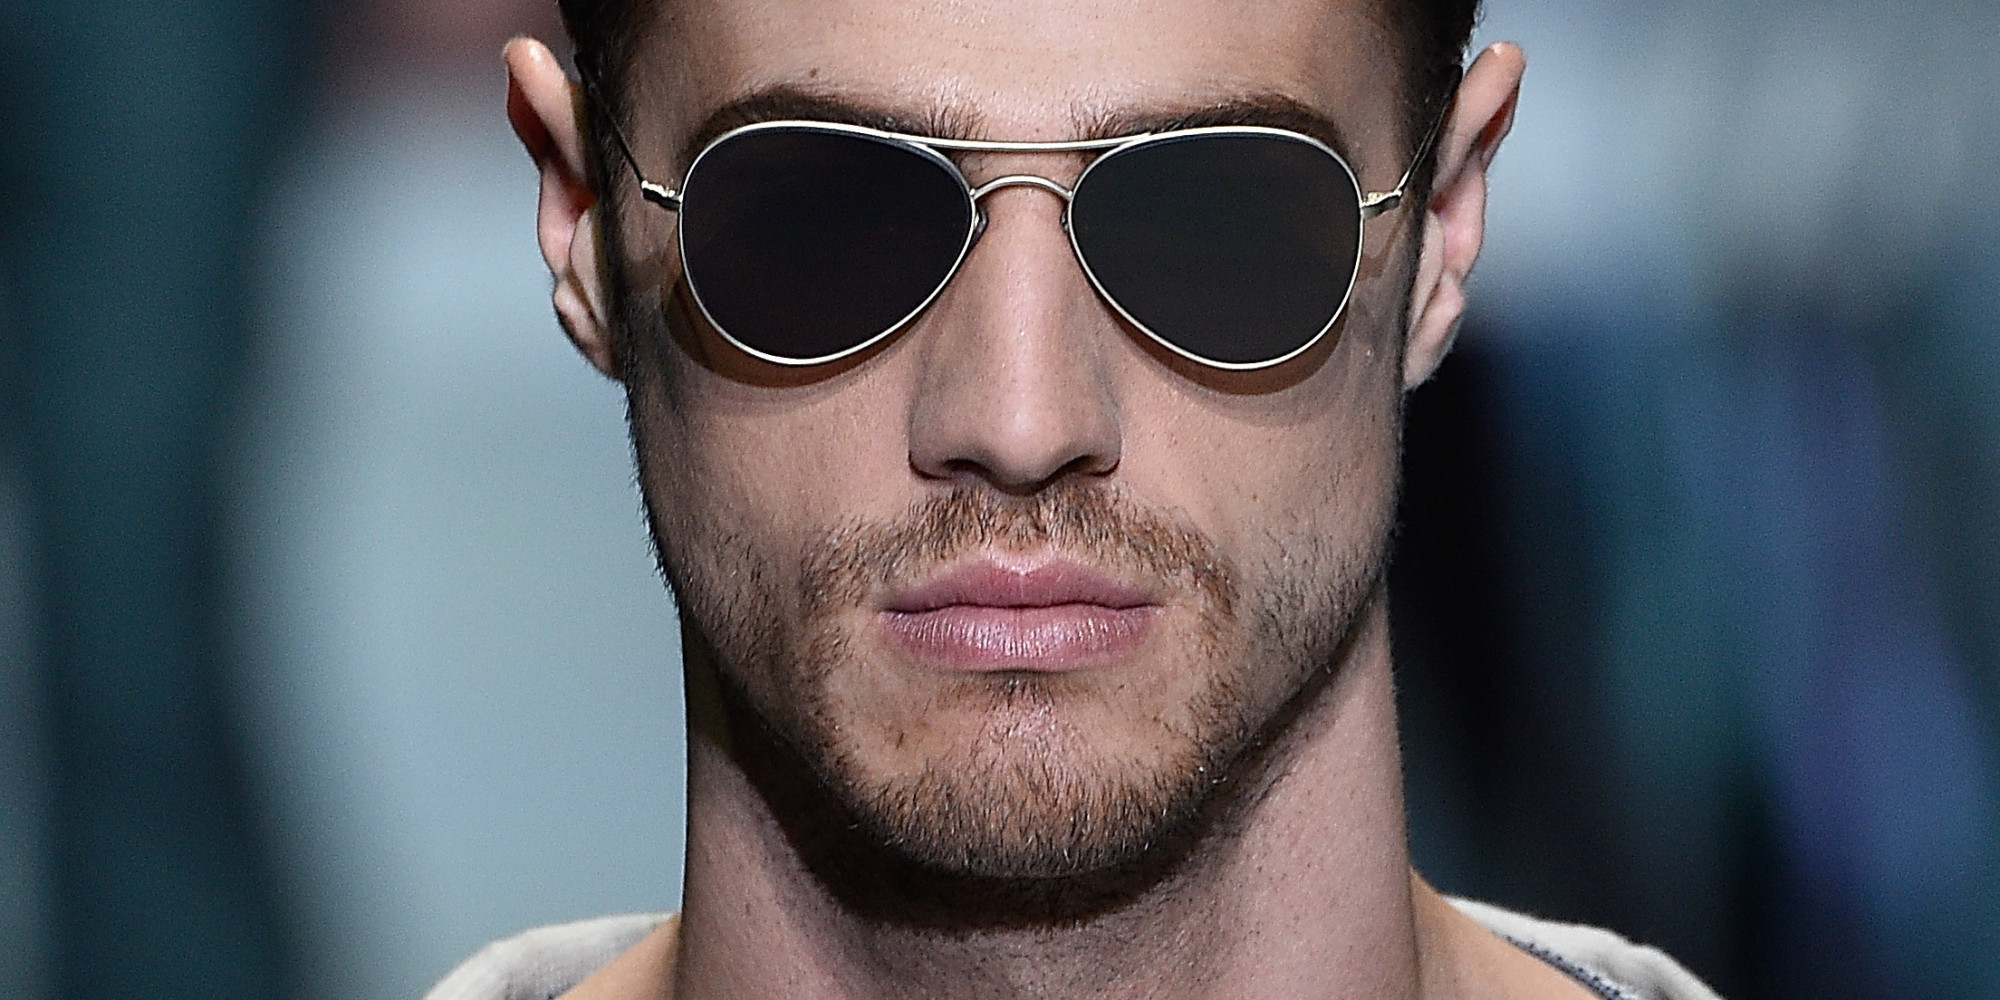 Бритый в очках. Очки мужские. Крутые мужские очки. Очки солнцезащитные мужские. Очки мужские солнцезащитные модные.